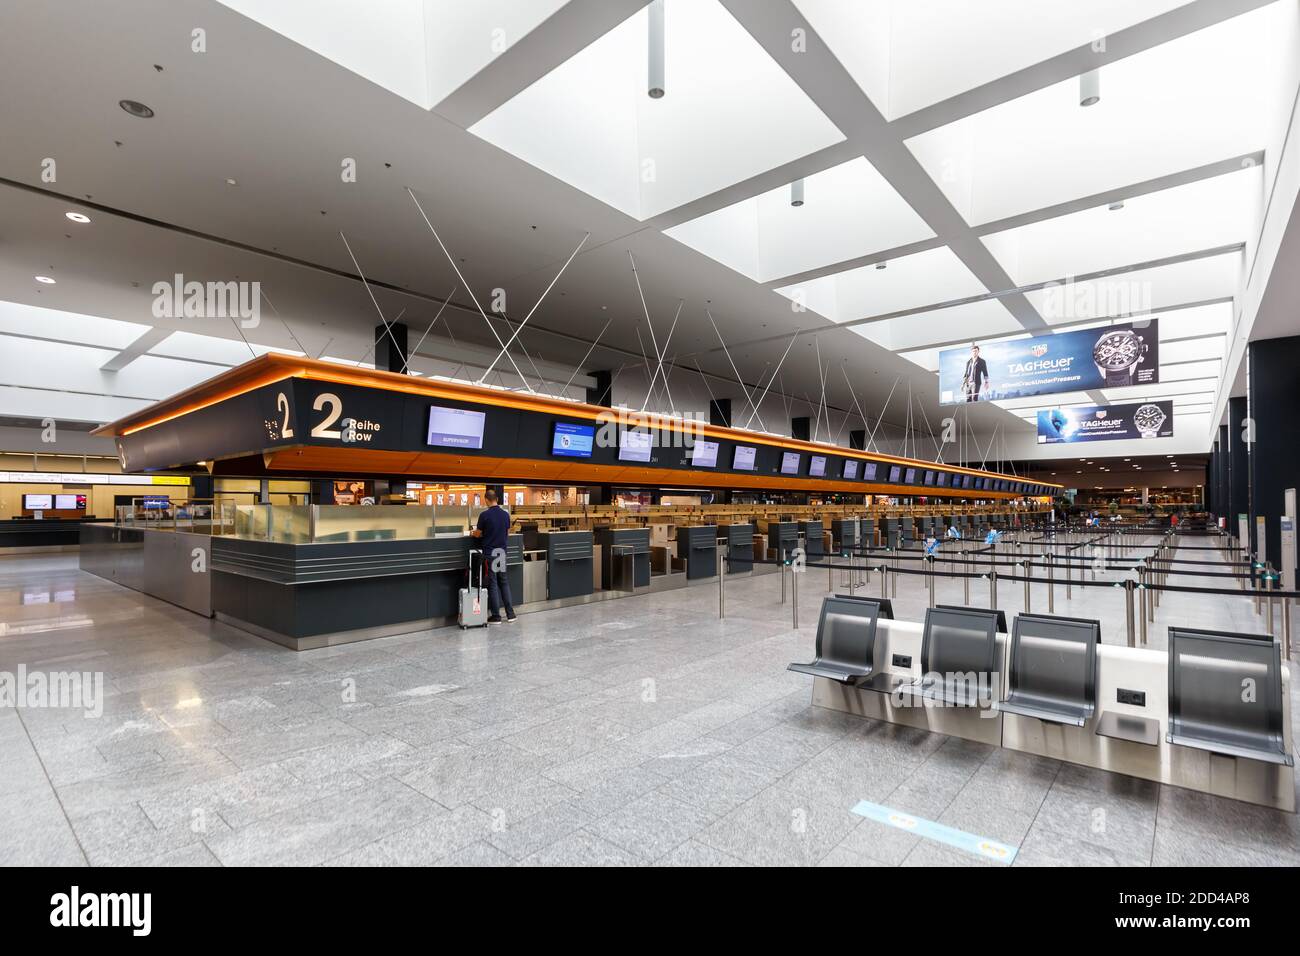 Zurich, Switzerland - September 23, 2020: Terminal Check-in 2 at Zurich Airport in Switzerland. Stock Photo